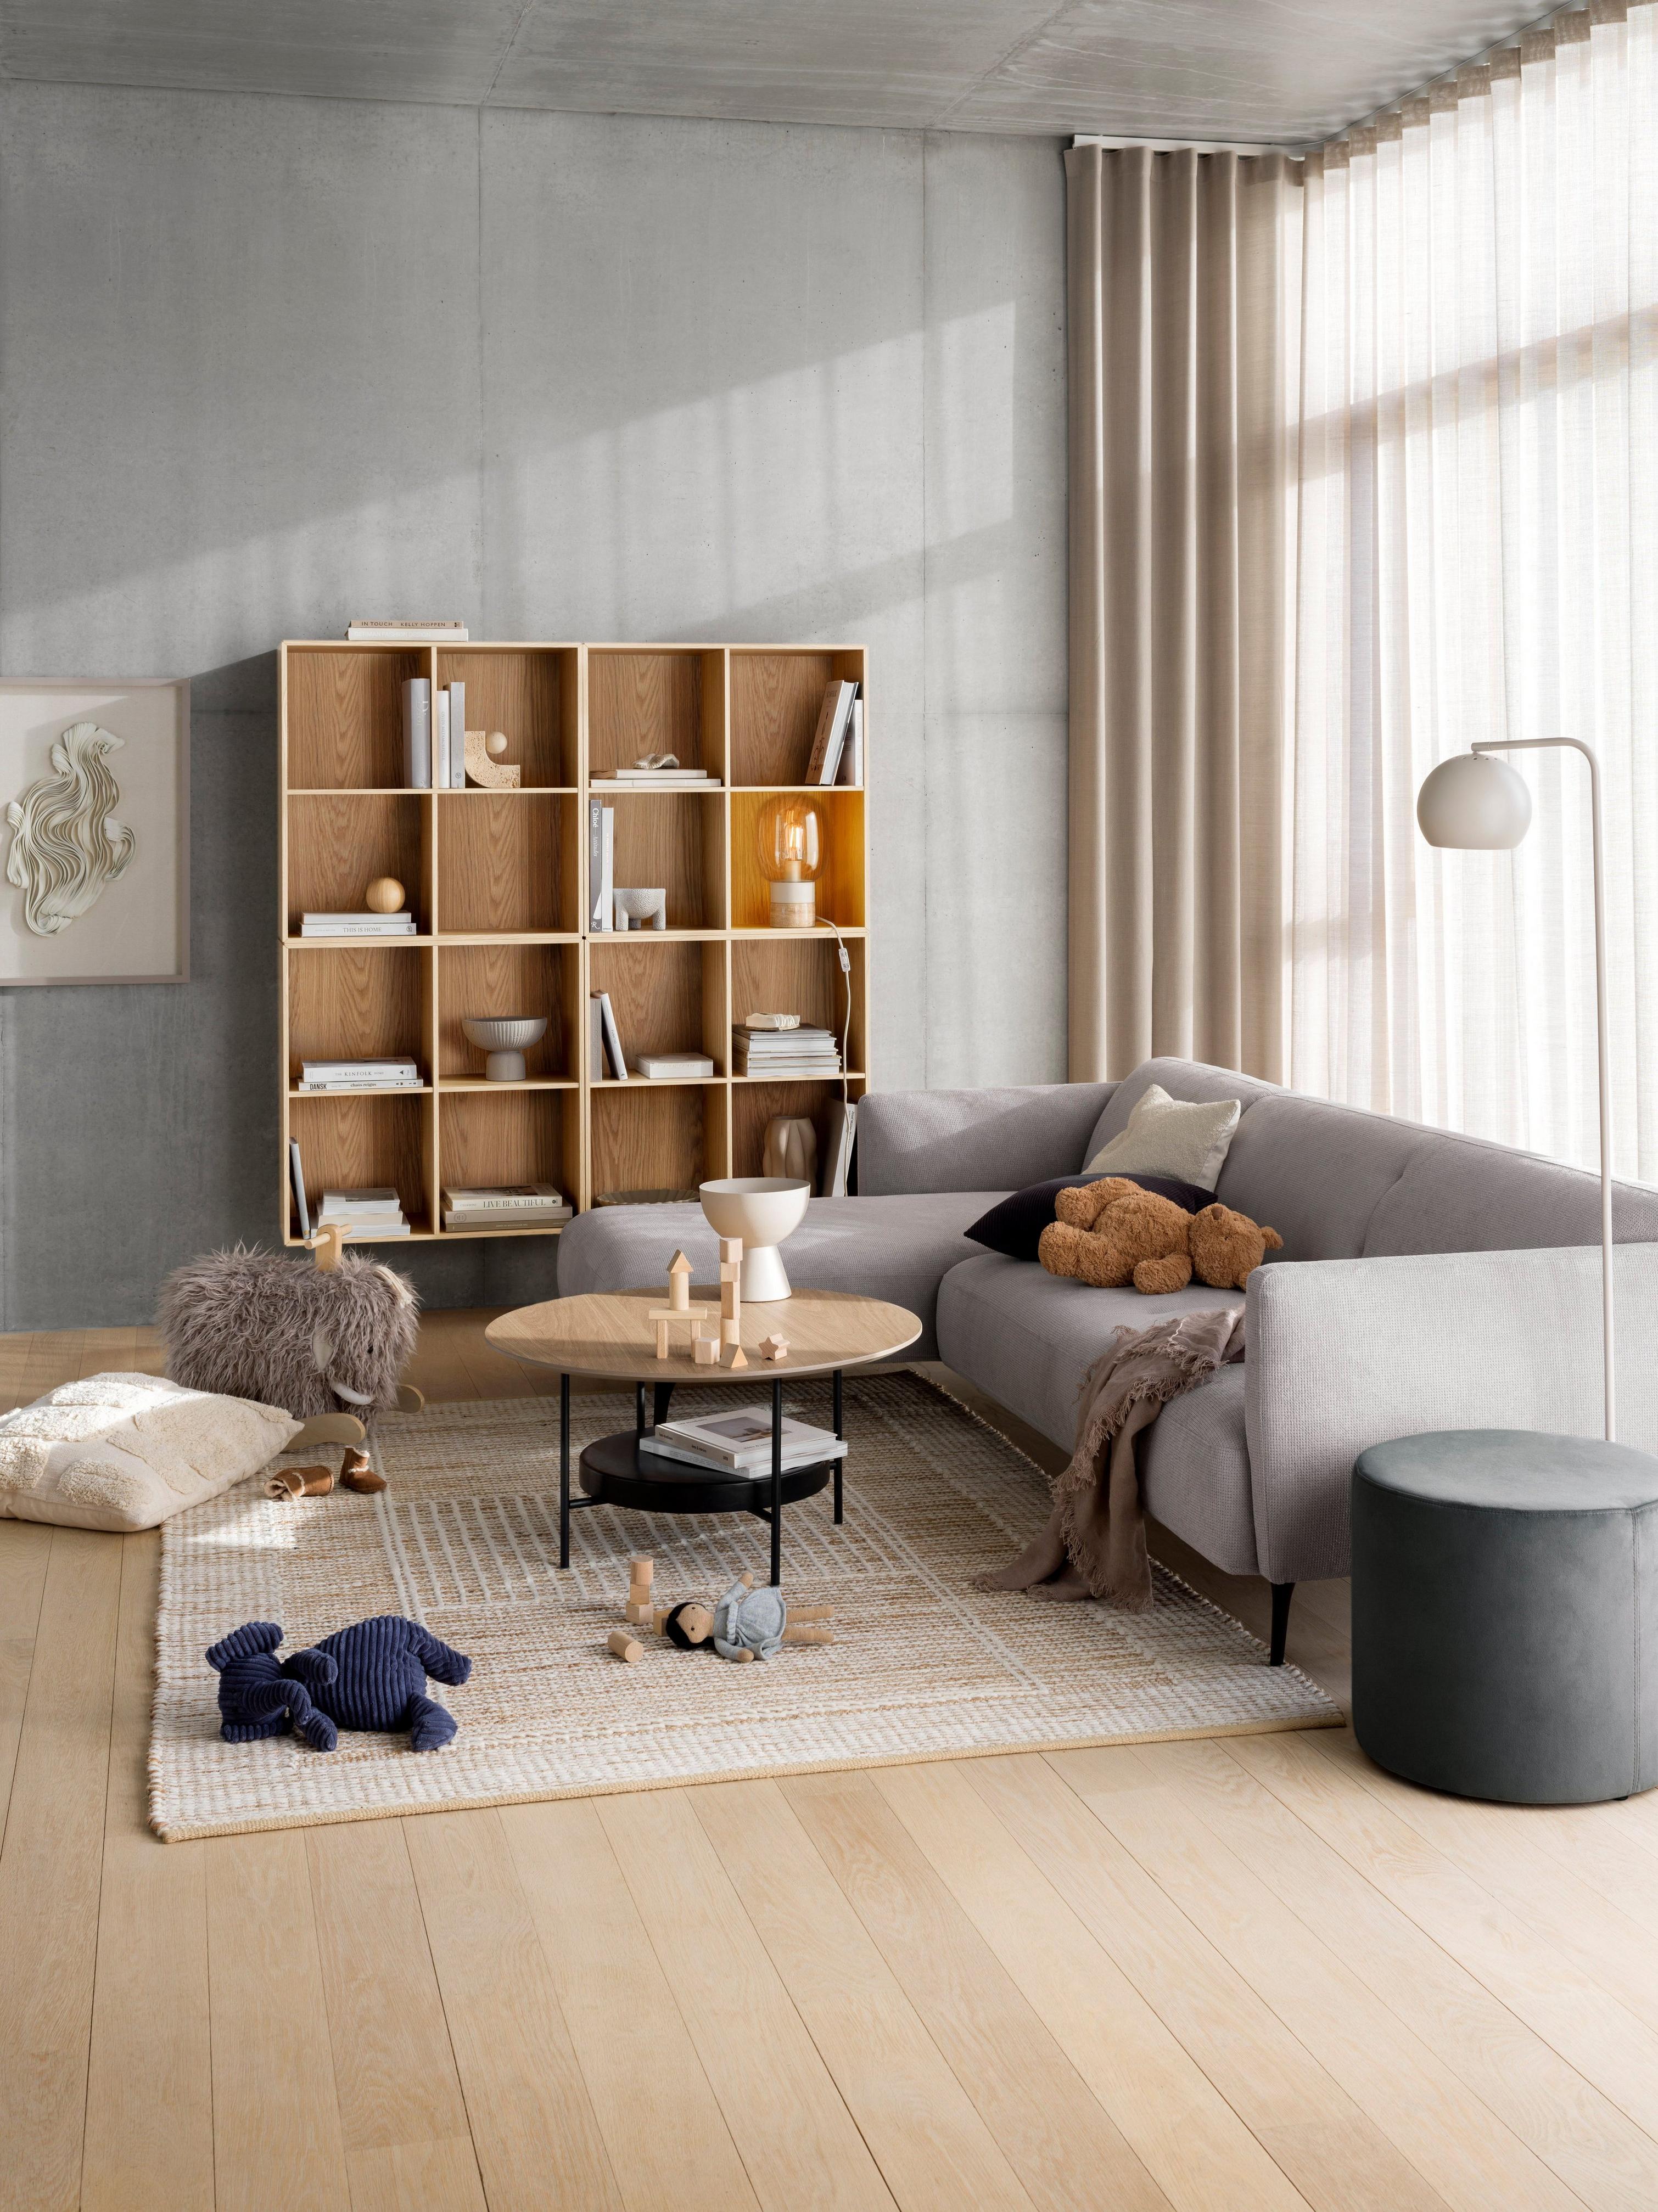 Moderna Sofa mit Ruhemodul in einem Raum mit Madrid Couchtisch und Como Bücherregal.